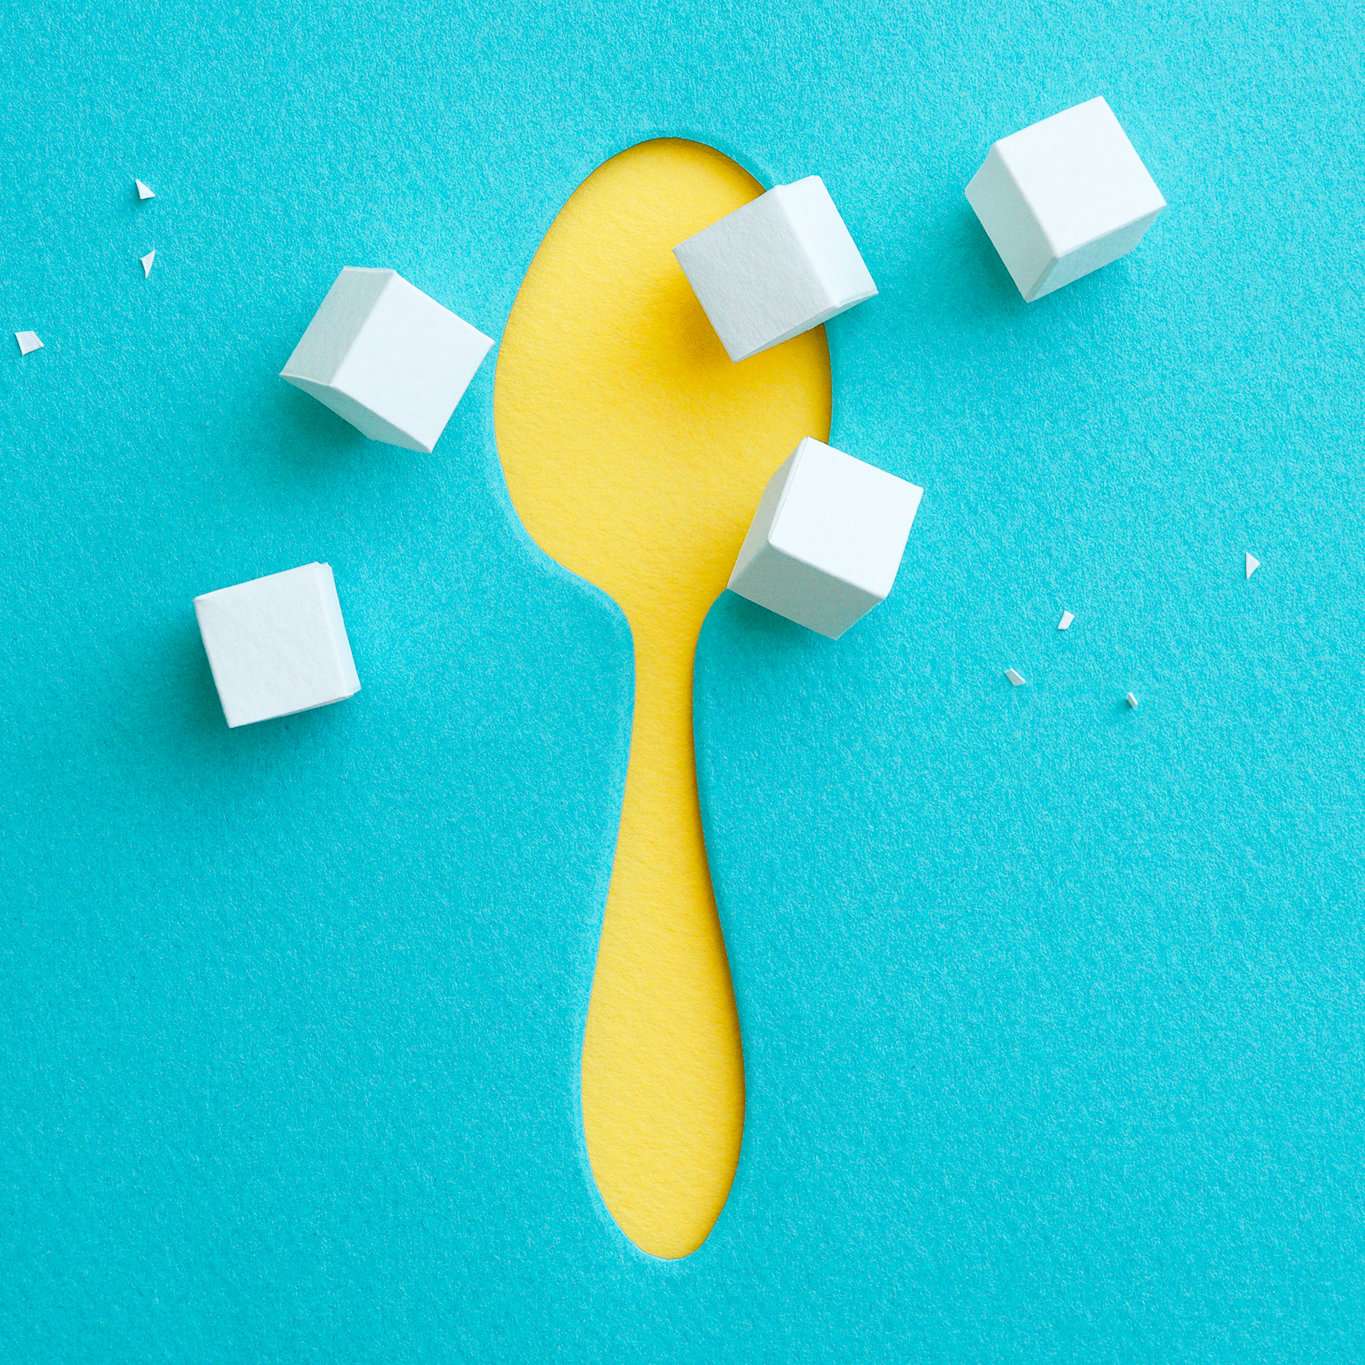 साल में 18 किलो चीनी खा जाते हैं हम, सेहत के लिए है बेहद खतरनाक